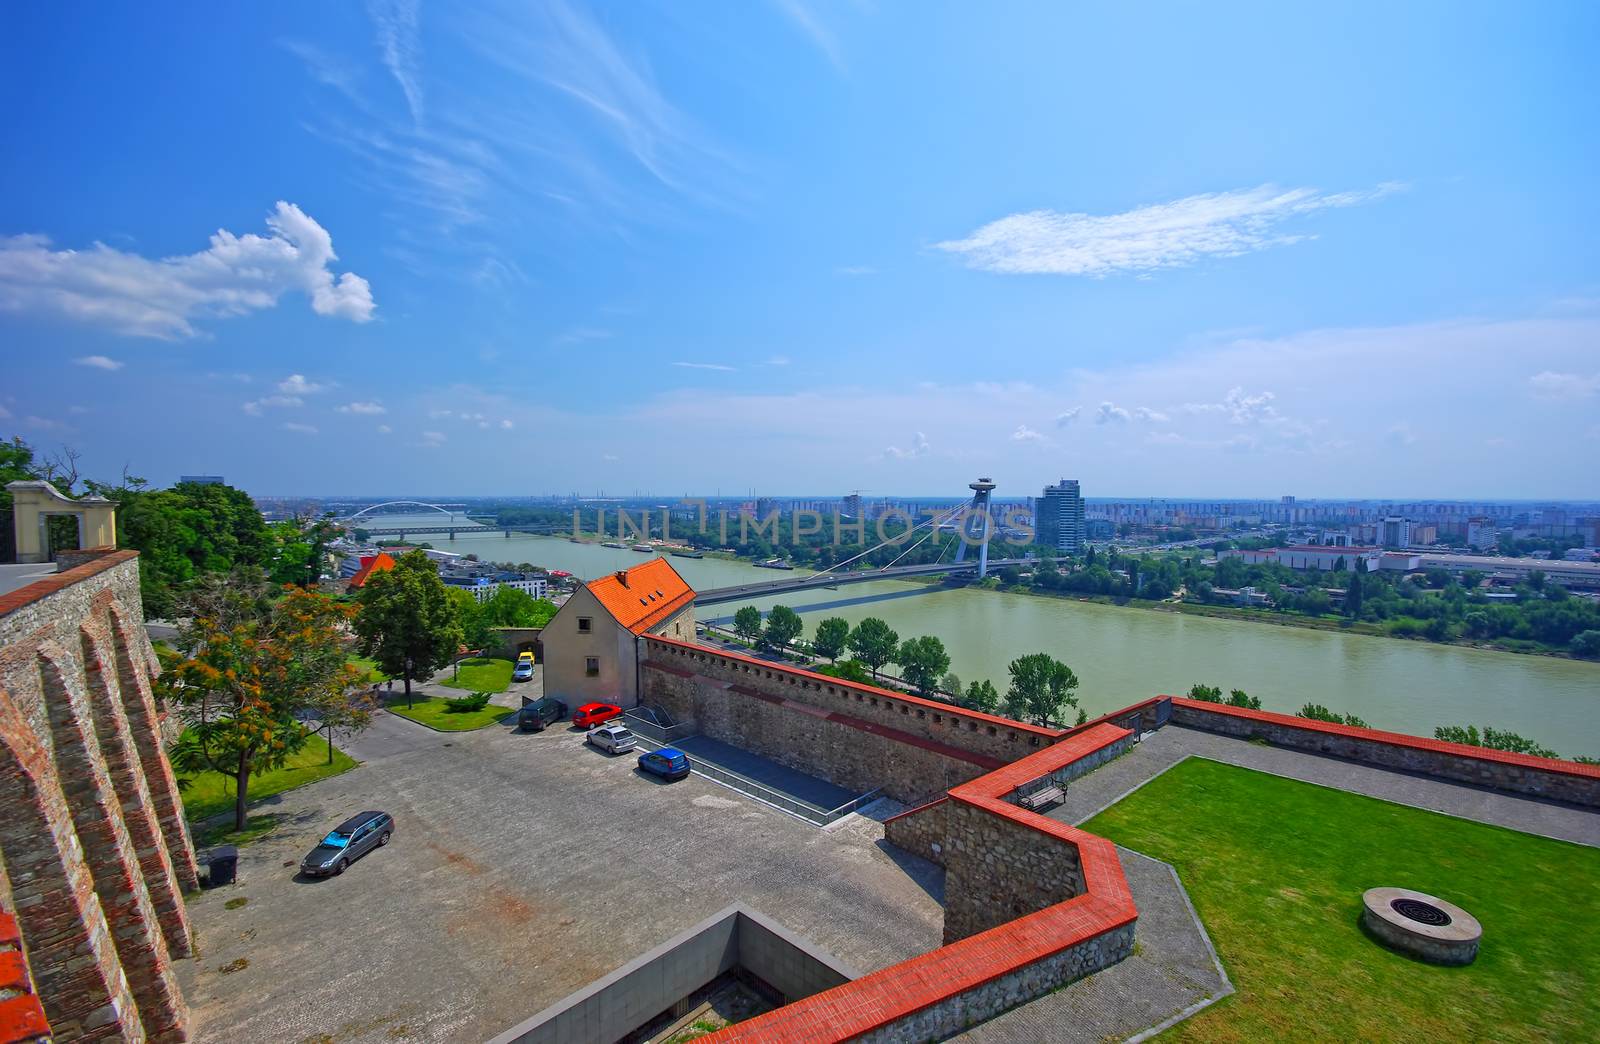 Danube river landscape in Bratislava by savcoco